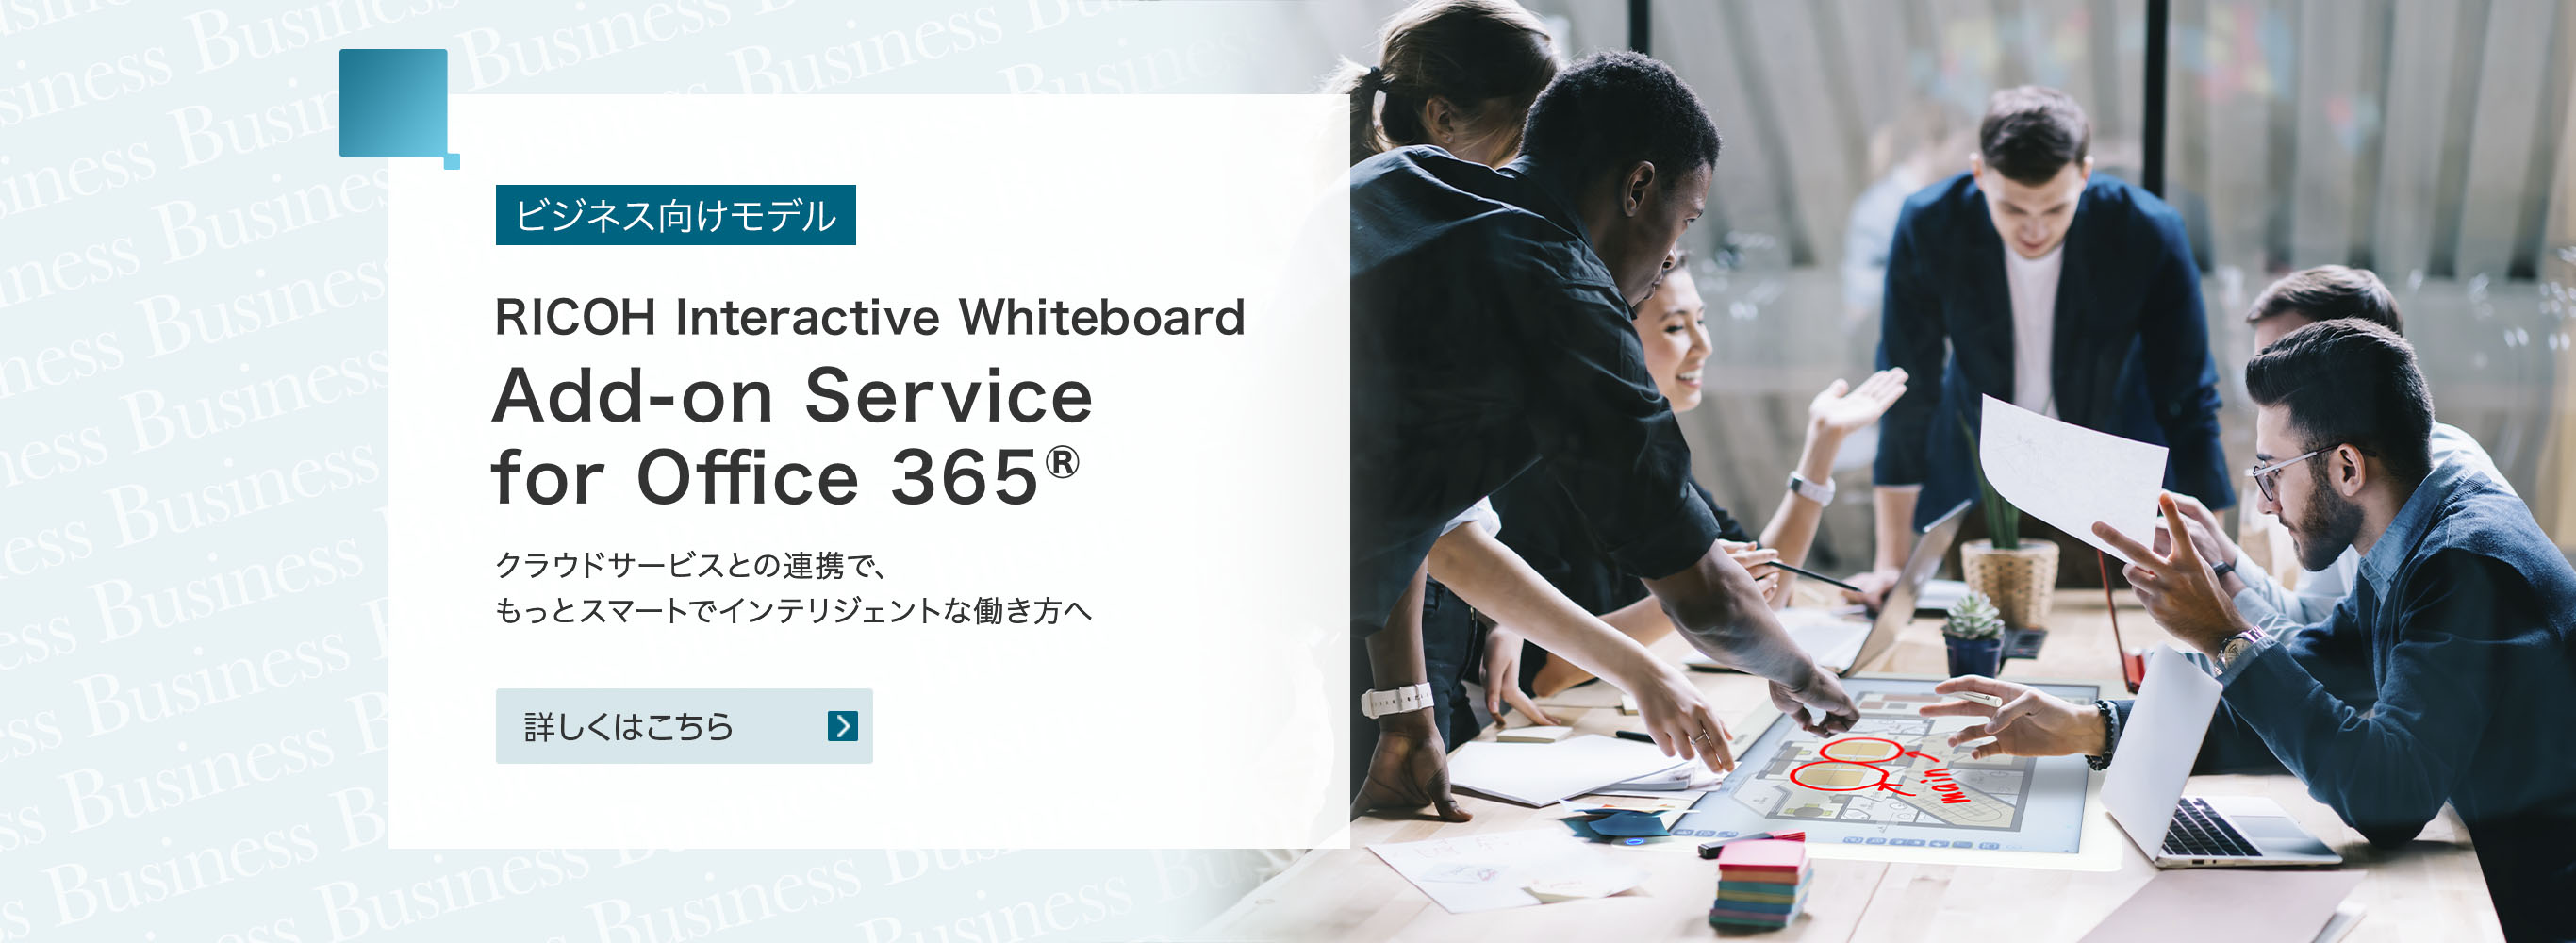 ビジネス向けモデル　創造性あふれる働き方のために、ホワイトボードが進化しました。　RICOH Interactive Whiteboard